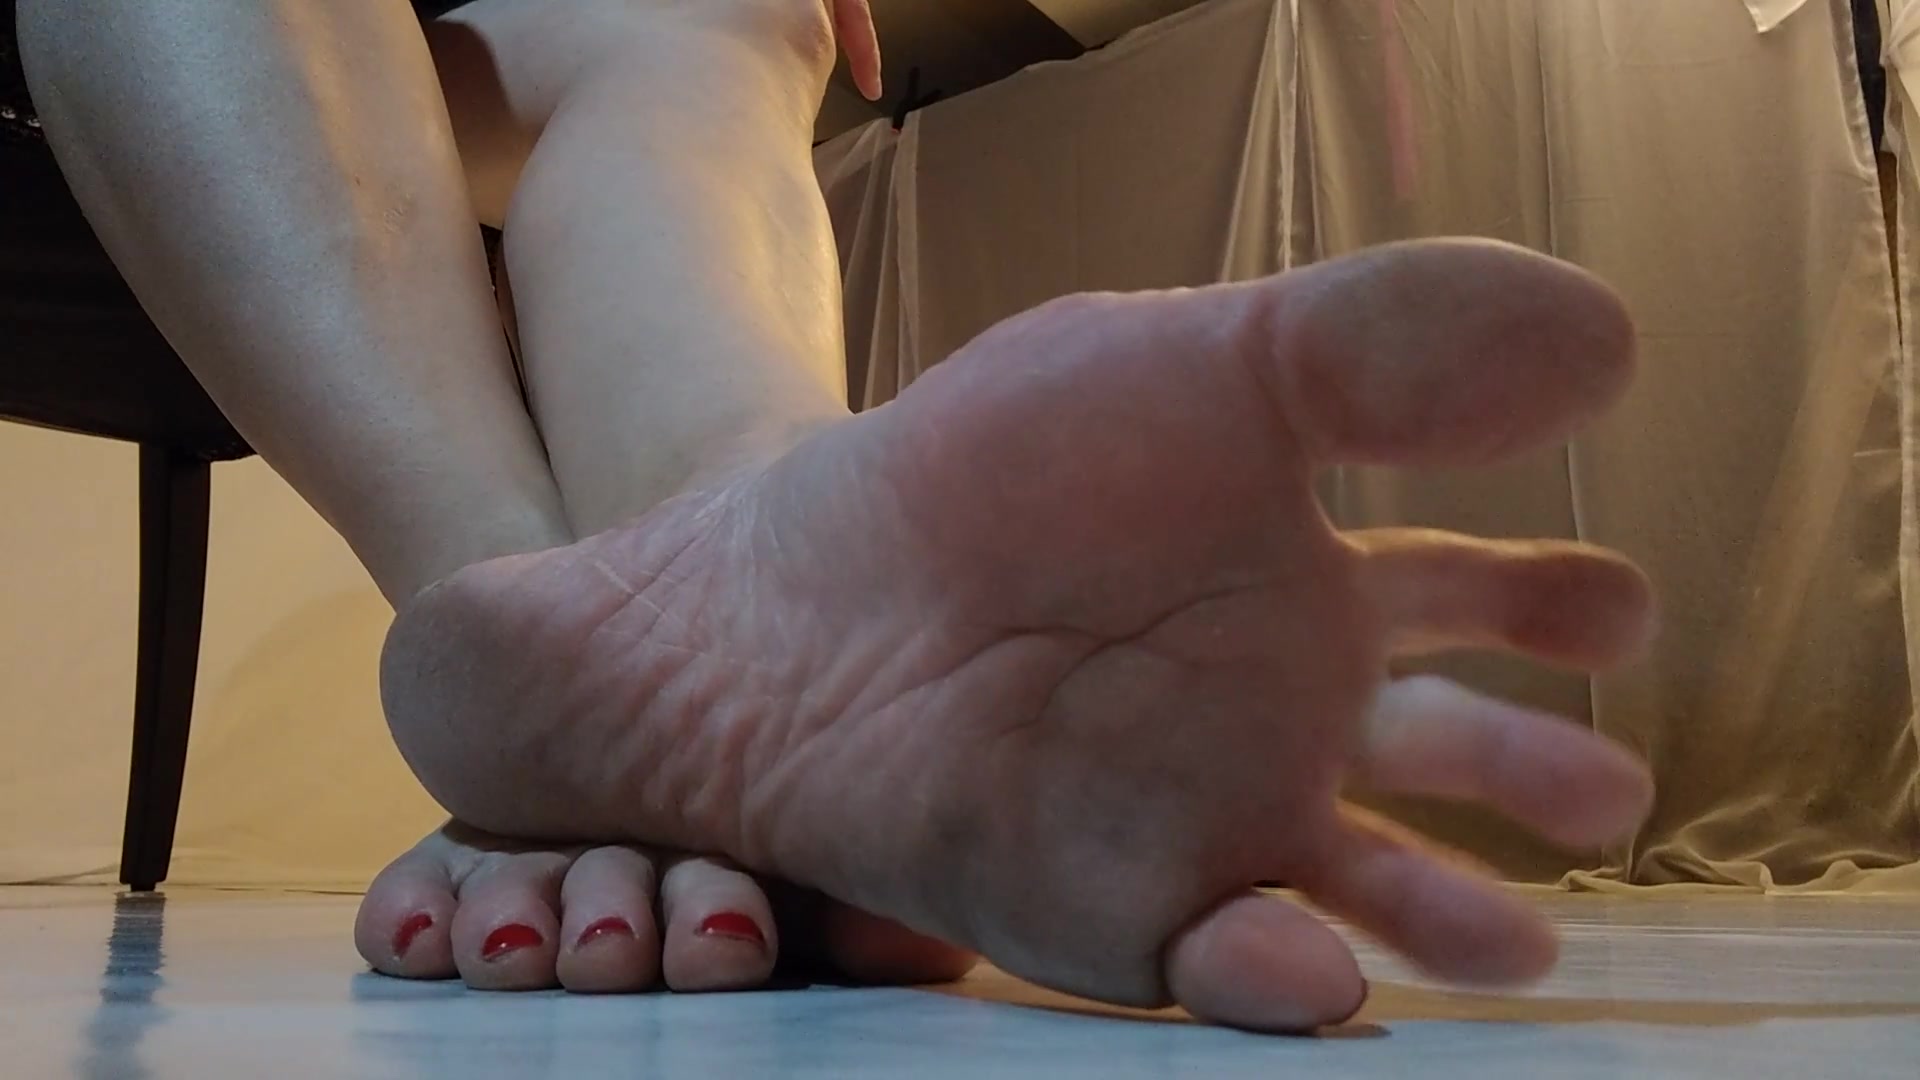 A little dirty foot